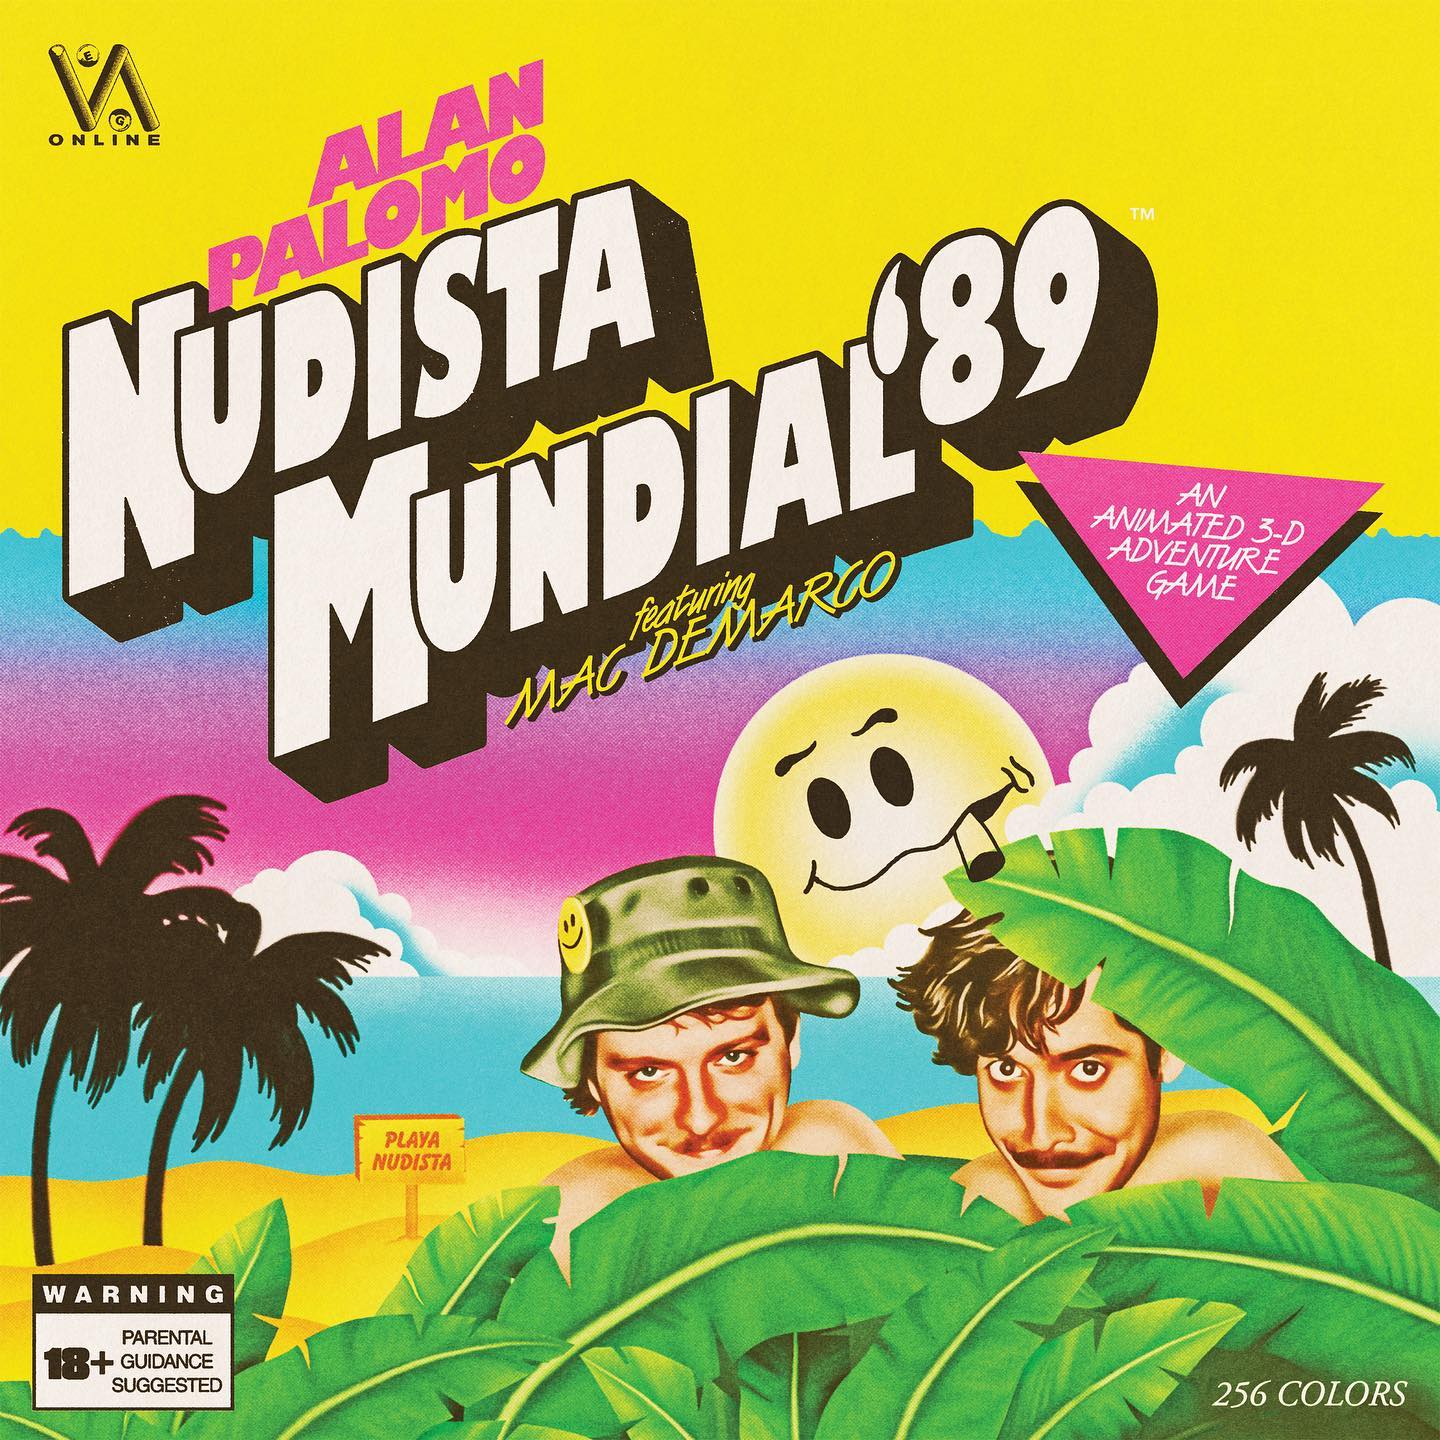 Alan Palomo deixa o Neon Indian de lado e convoca o Mac DeMarco para cantar sobre garotos nus em Ibiza. Tem até vídeo&#8230;